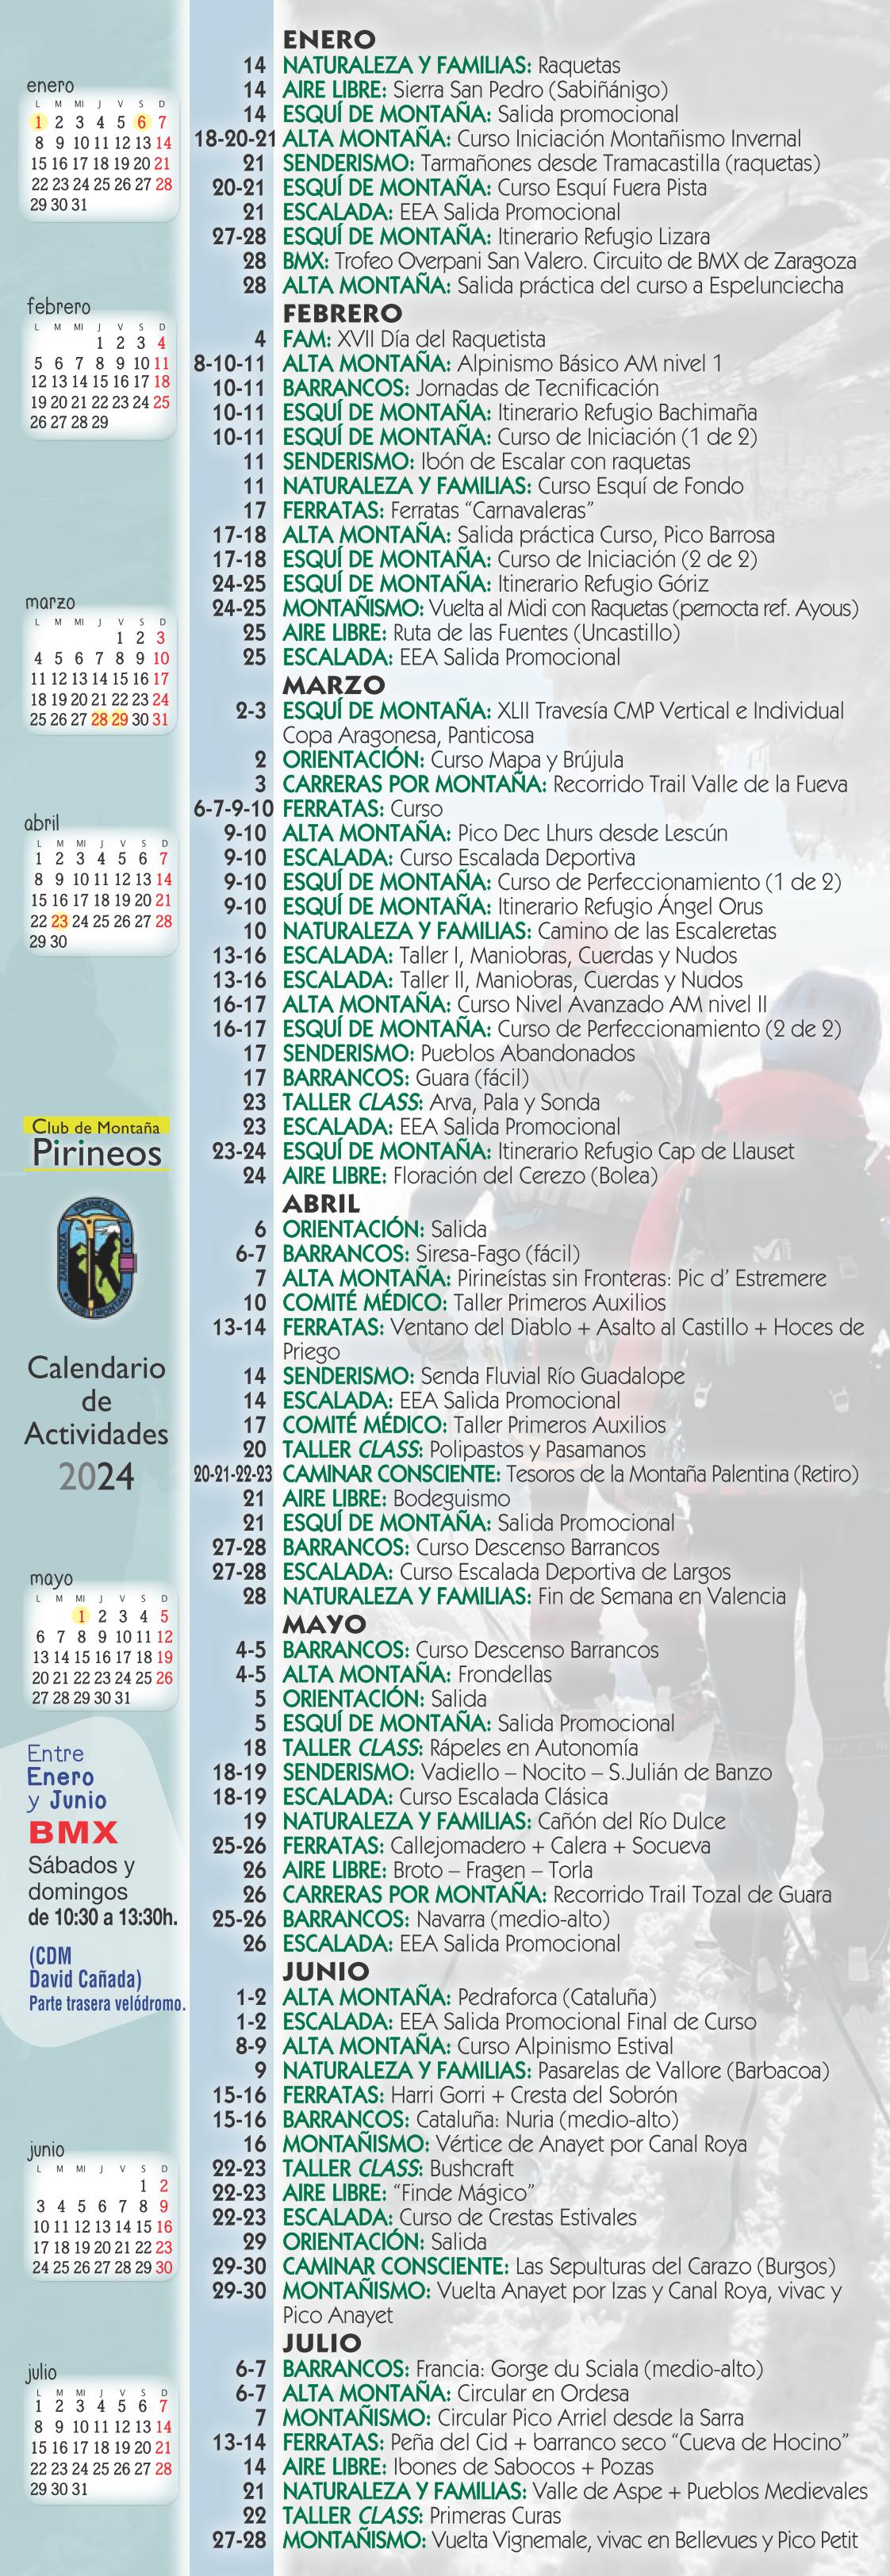 Club Montaña Pirineos-calendario 2024gde 01  